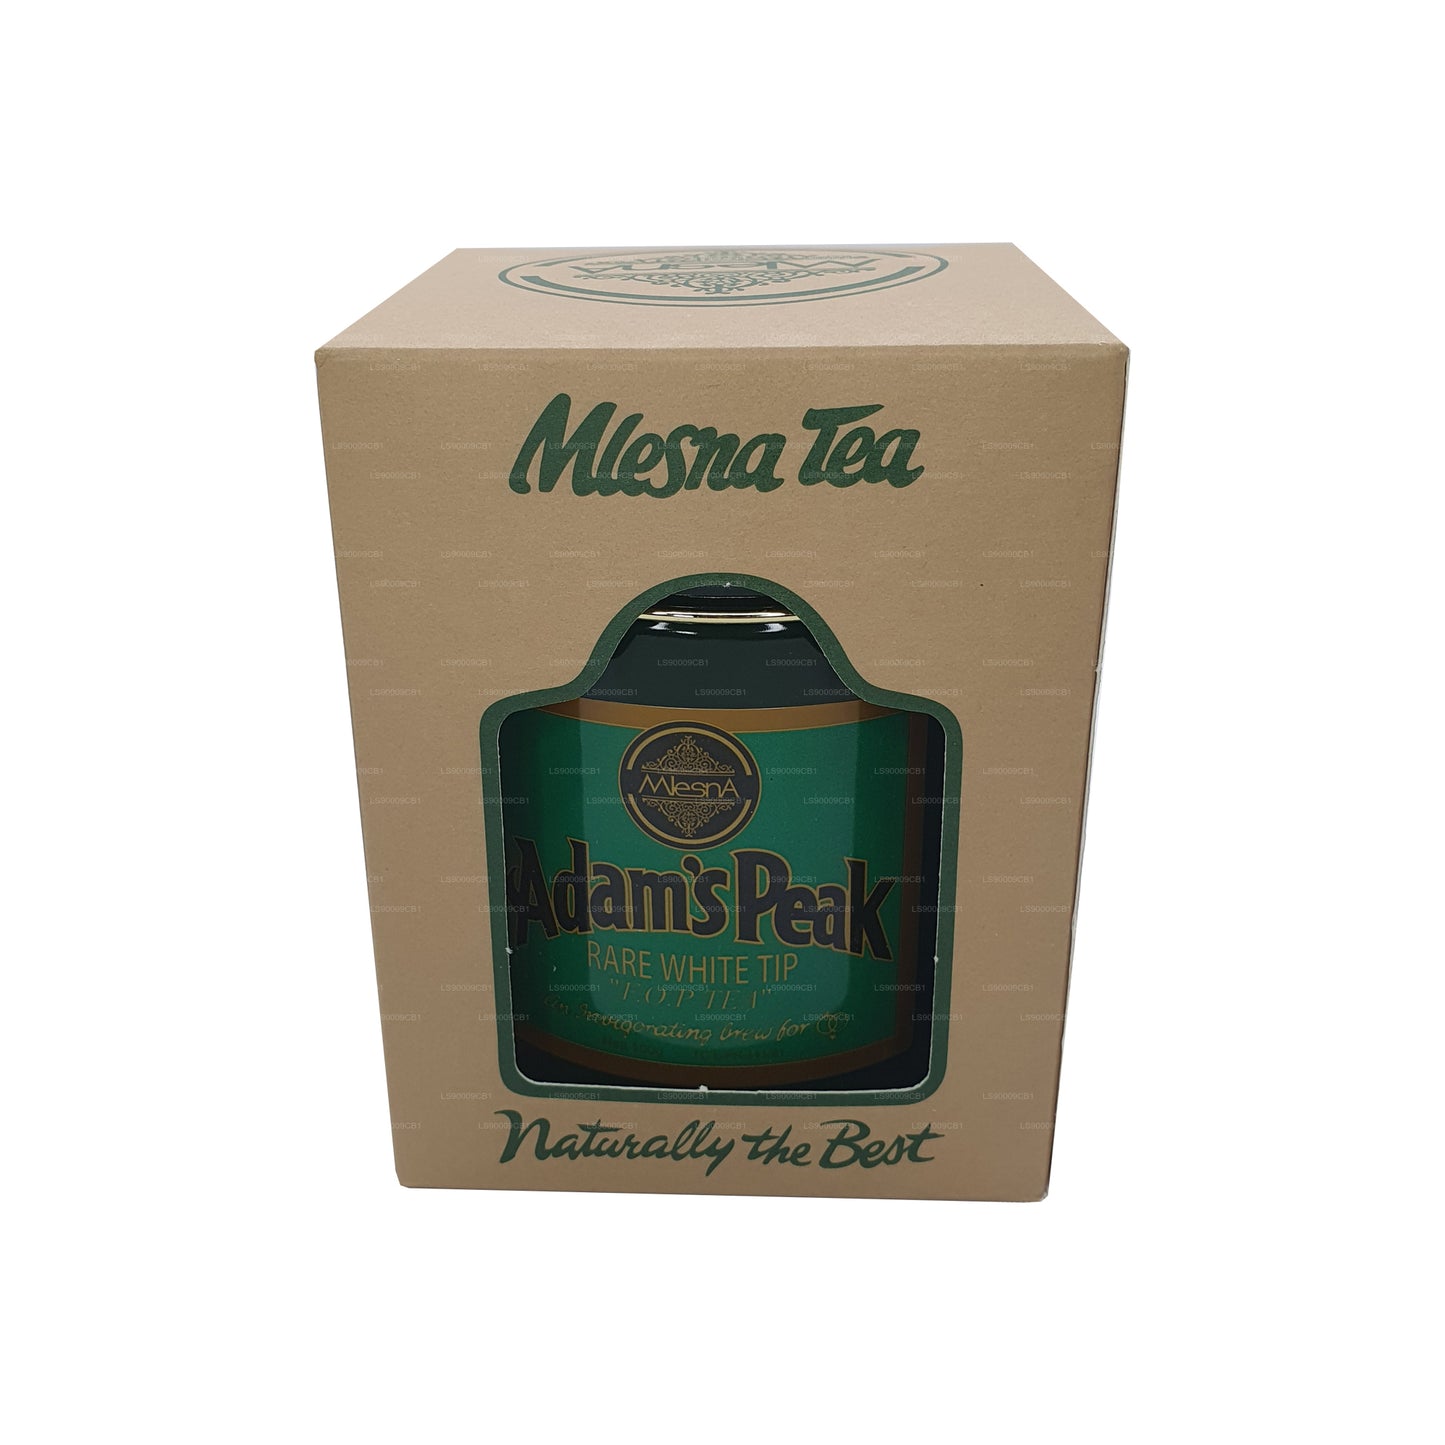 Mlesna Tea Adam's Peak zeldzame FOP-bladthee met witte punt in metalen caddy (100 g)